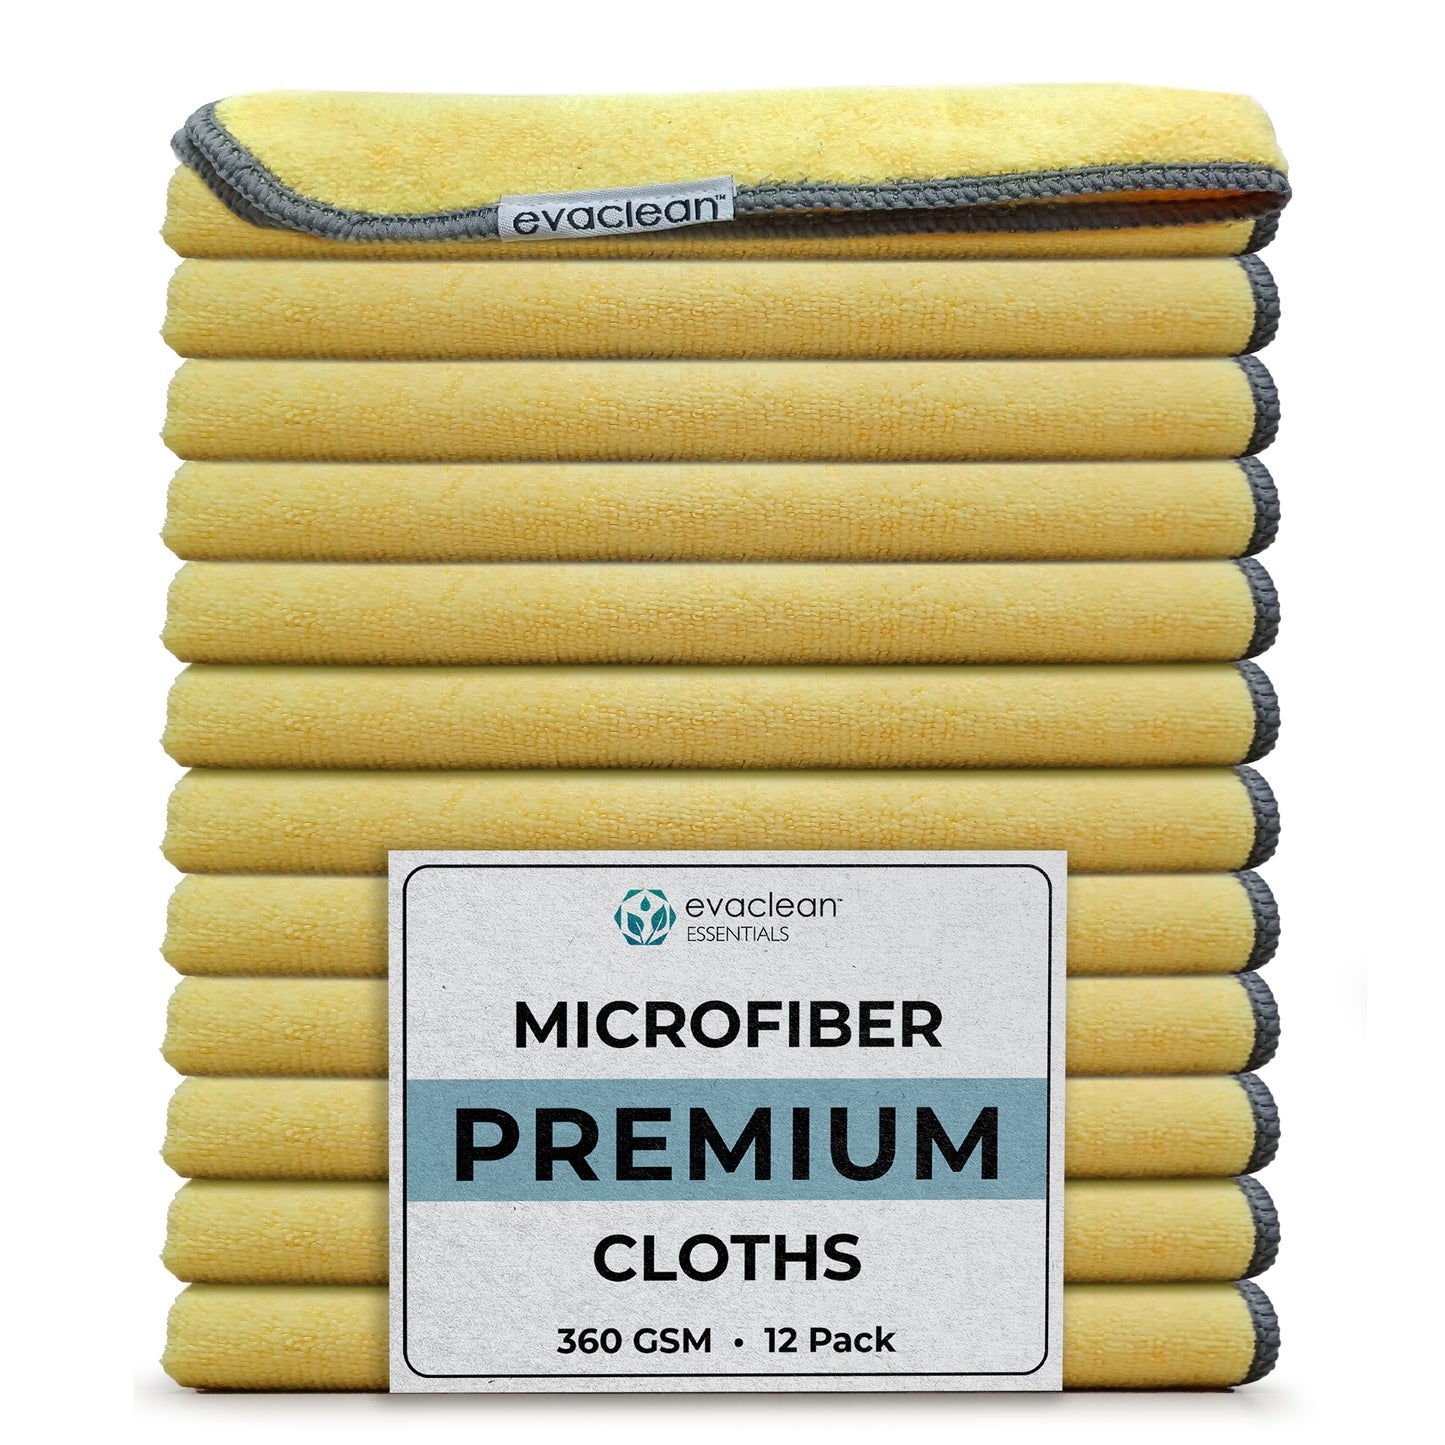 Premium Microfiber Cleaning Cloth 16"x16"